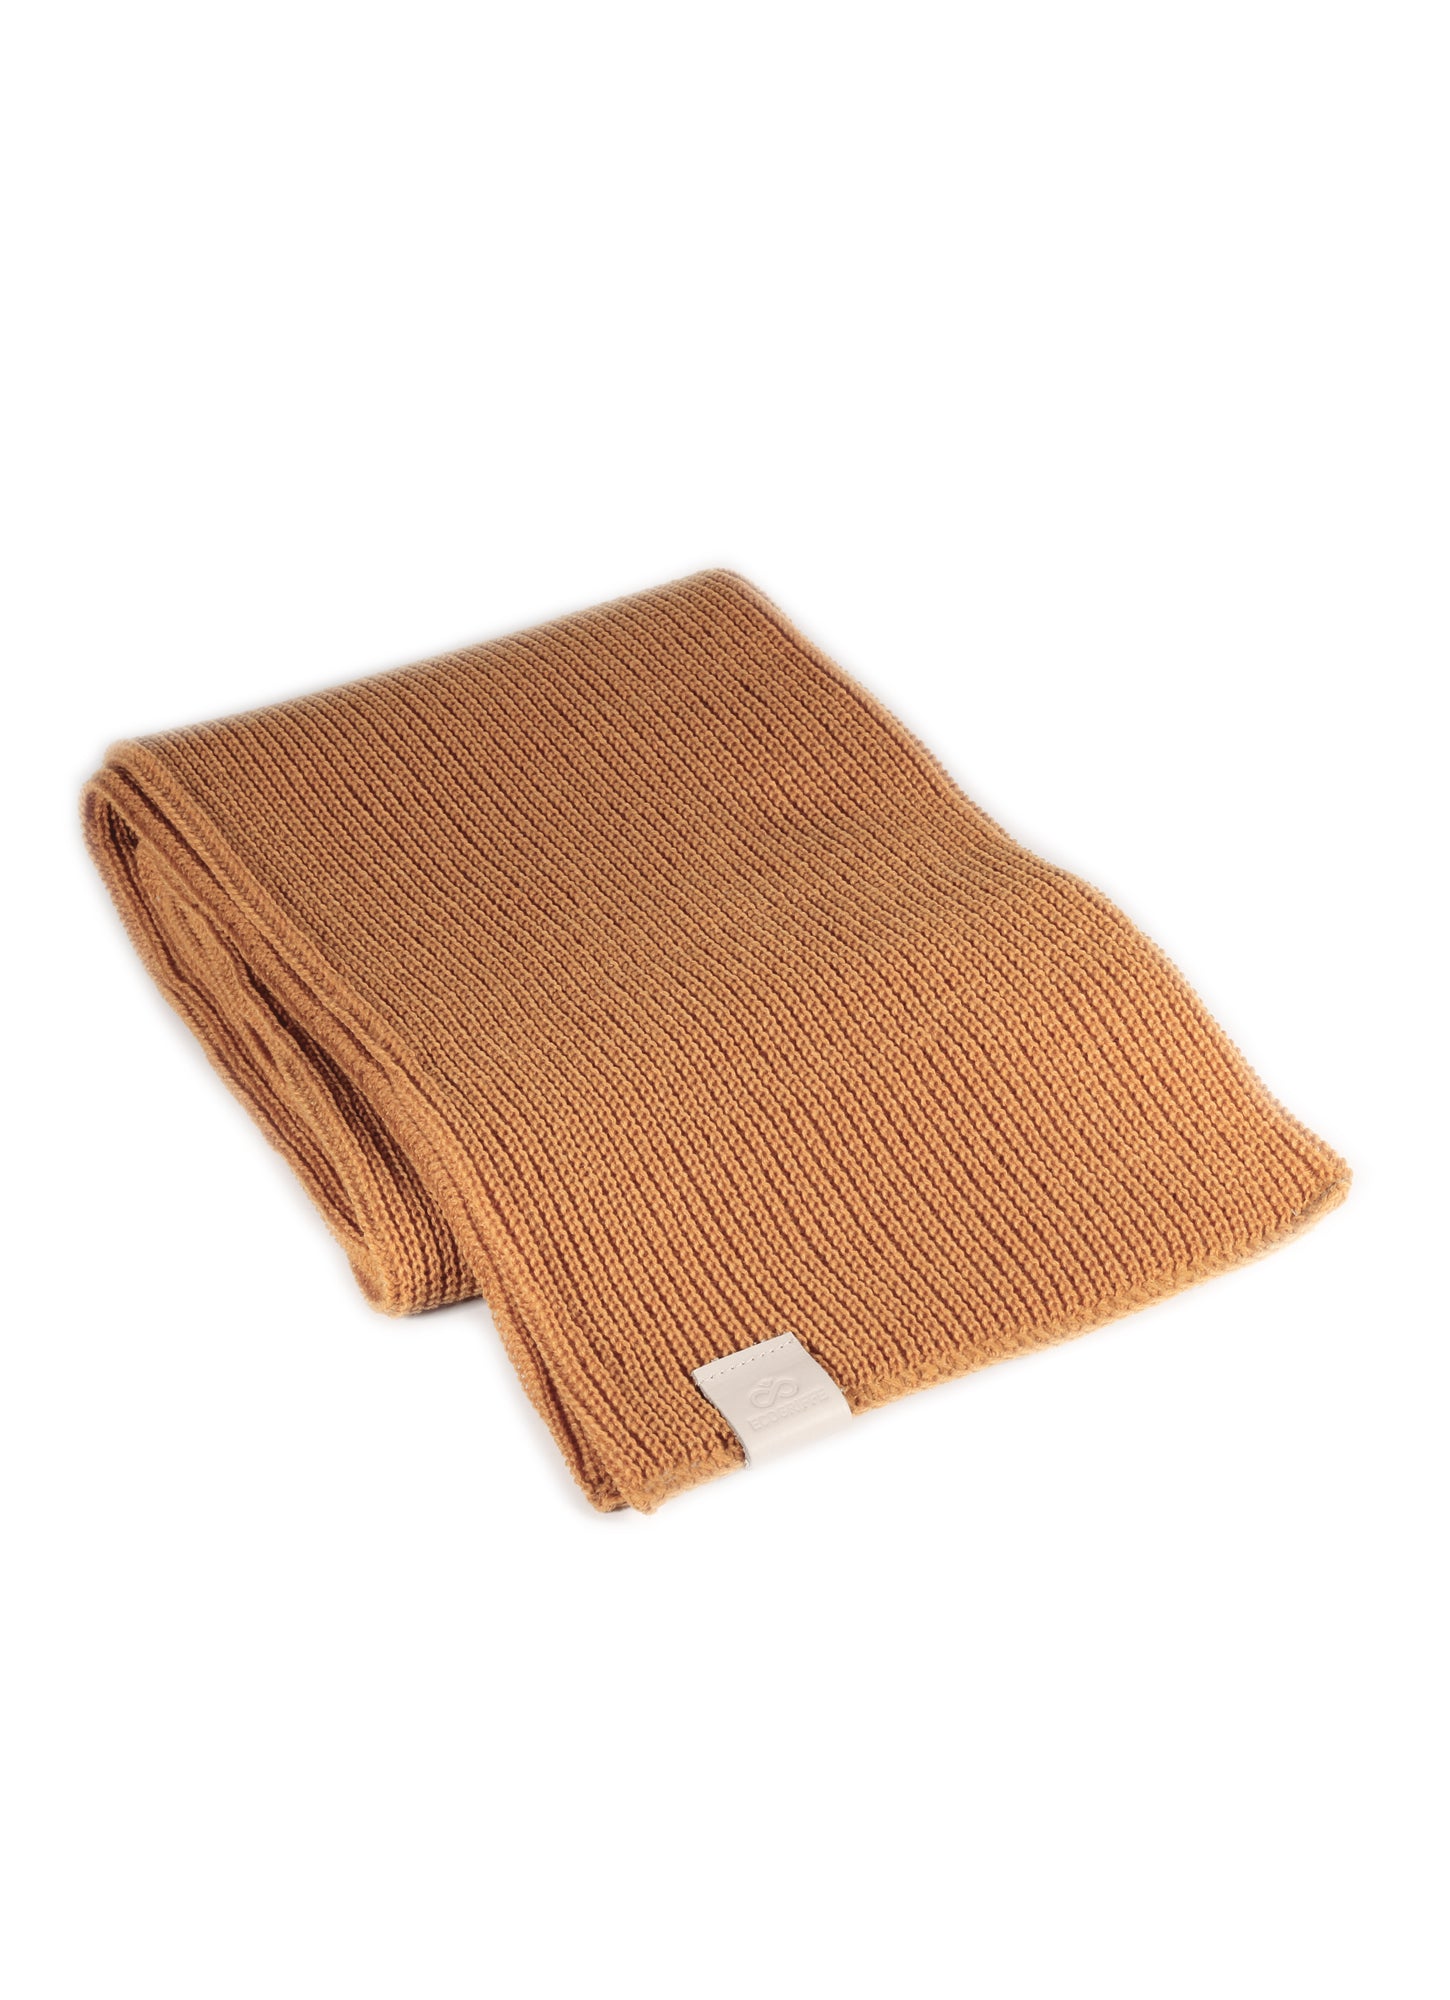 ecogriffe-foulard-dijon-etiquette-pale